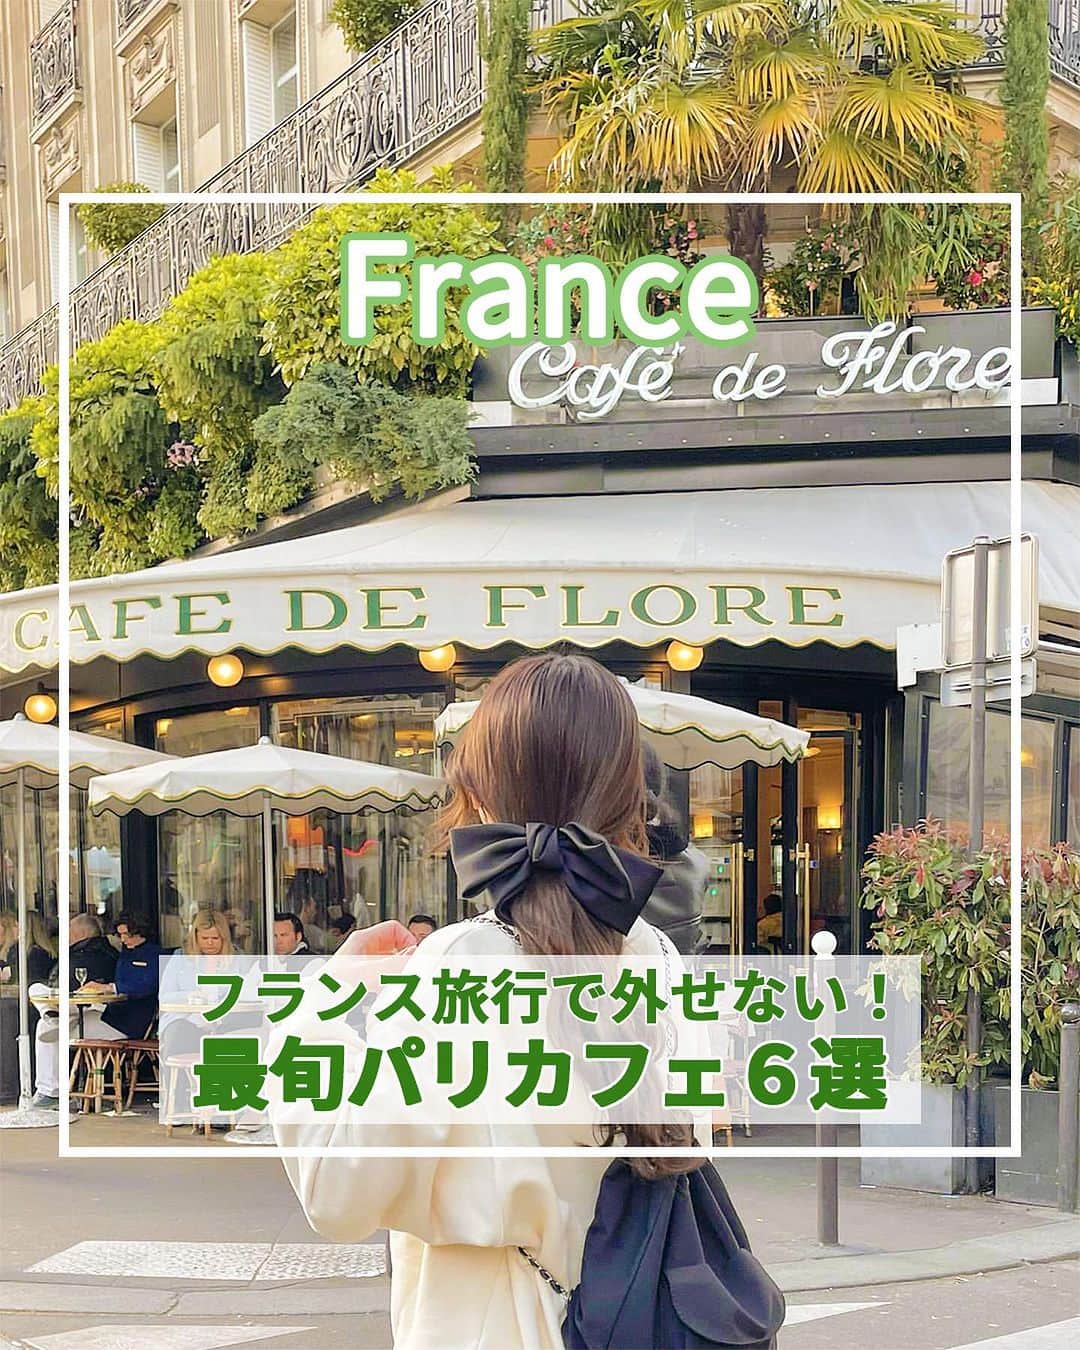 旅工房公式のインスタグラム：「＼老舗からおしゃれスポットまで！／  #パリカフェ #フランスカフェ   こんにちは！☺  今回は人気の旅行先フランス・パリから、旅行中絶対に行きたいおしゃれすぎるカフェを6つ特集しました✨  フランス旅行に言ったらぜひ本場のカフェ文化を味わいたい！  どこもおしゃれすぎて、優雅なカフェタイムを味わえそうですね🎶   旅行先の参考にぜひしてみてください＼(^o^)／ 💚   ━━━━━━━━━━━━━━━   ▽お写真ありがとうございます❣   📍Carette’（ @caretteofficiel ）📸@y_k_rinpi さん  エッフェル塔のすぐ近くのトロカデロ店とマレ地区のヴォージュ広場店の2つの店舗があり、どちらも観光地からすぐ近く！  軽食から、スイーツまで色々なメニューがあるので観光の休憩に◎   📍Café des Deux Moulins（@cafe.des.deux.moulins ）📸@meimi.sap_obi さん  日本でも人気の映画「アメリ」のロケ地として有名なカフェ！  店内に入ると映画の世界に入ったような気分を味わえます。  映画にも出てきたクレームブリュレが人気メニュー◎   📍Café de Flore （@lecafedeflore ）📸@k0001112 さん  パリのカフェ巡りで外せない人気の老舗カフェ♪  朝7時半からやっているので、朝食に訪れる人が多いんだとか！  眺めの良いテラス席でゆったりとした時間を楽しむのがおすすめ◎   📍La Maison Rose （lamaisonroseofficial ）📸@have_tea_time さん  モンマルトルのメインストリートのすぐ近く！  ピンクとグリーンの外観がかわいいフォトジェニックカフェ♪  人気ドラマ「エミリー、パリへ行く」のロケ地にもなっています。   📍Café Lapérouse （@cafelaperouse_paris ）📸@fumixparis さん  コンコルド広場に面していて、エッフェル塔を見ながらのカフェタイムが過ごせるスポット♪  店内のインテリアもとてもおしゃれですが、おすすめは日差しが降り注ぐテラス席です♪   📍Les Deux Magots （@lesdeuxmagots ）📸@miimemo_gohan さん  パリの地元民からも観光客からも愛される必見スポット！ かつてピカソやヘミングウェイなど多くのアーティストが通い詰めたことでも有名なカフェなんですよ♪   この記事を読んで、ぜひ次回の海外旅行の参考にしてみて下さい＼(^o^)／💛   �   #旅工房 #フランス女子旅 #フランス旅行 #パリ #HIDDENGEMCOFFEE #フランスカフェ巡り #カフェ巡り #CafédeFlore #LaMaisonRose #CaféLapérouse #フランス #LesDeuxMagots #フランスグルメ #パリグルメ #パリ女子旅 #パリ #パリスイーツ #海外旅行好きと繋がりたい #海外旅行 #旅行好きな人と繋がりたい #海外旅行準備 #旅好き女子 #海外旅行行きたい #海外旅行計画 #旅スタグラム #海外一人旅 #旅の記録 #カレット #Carette」